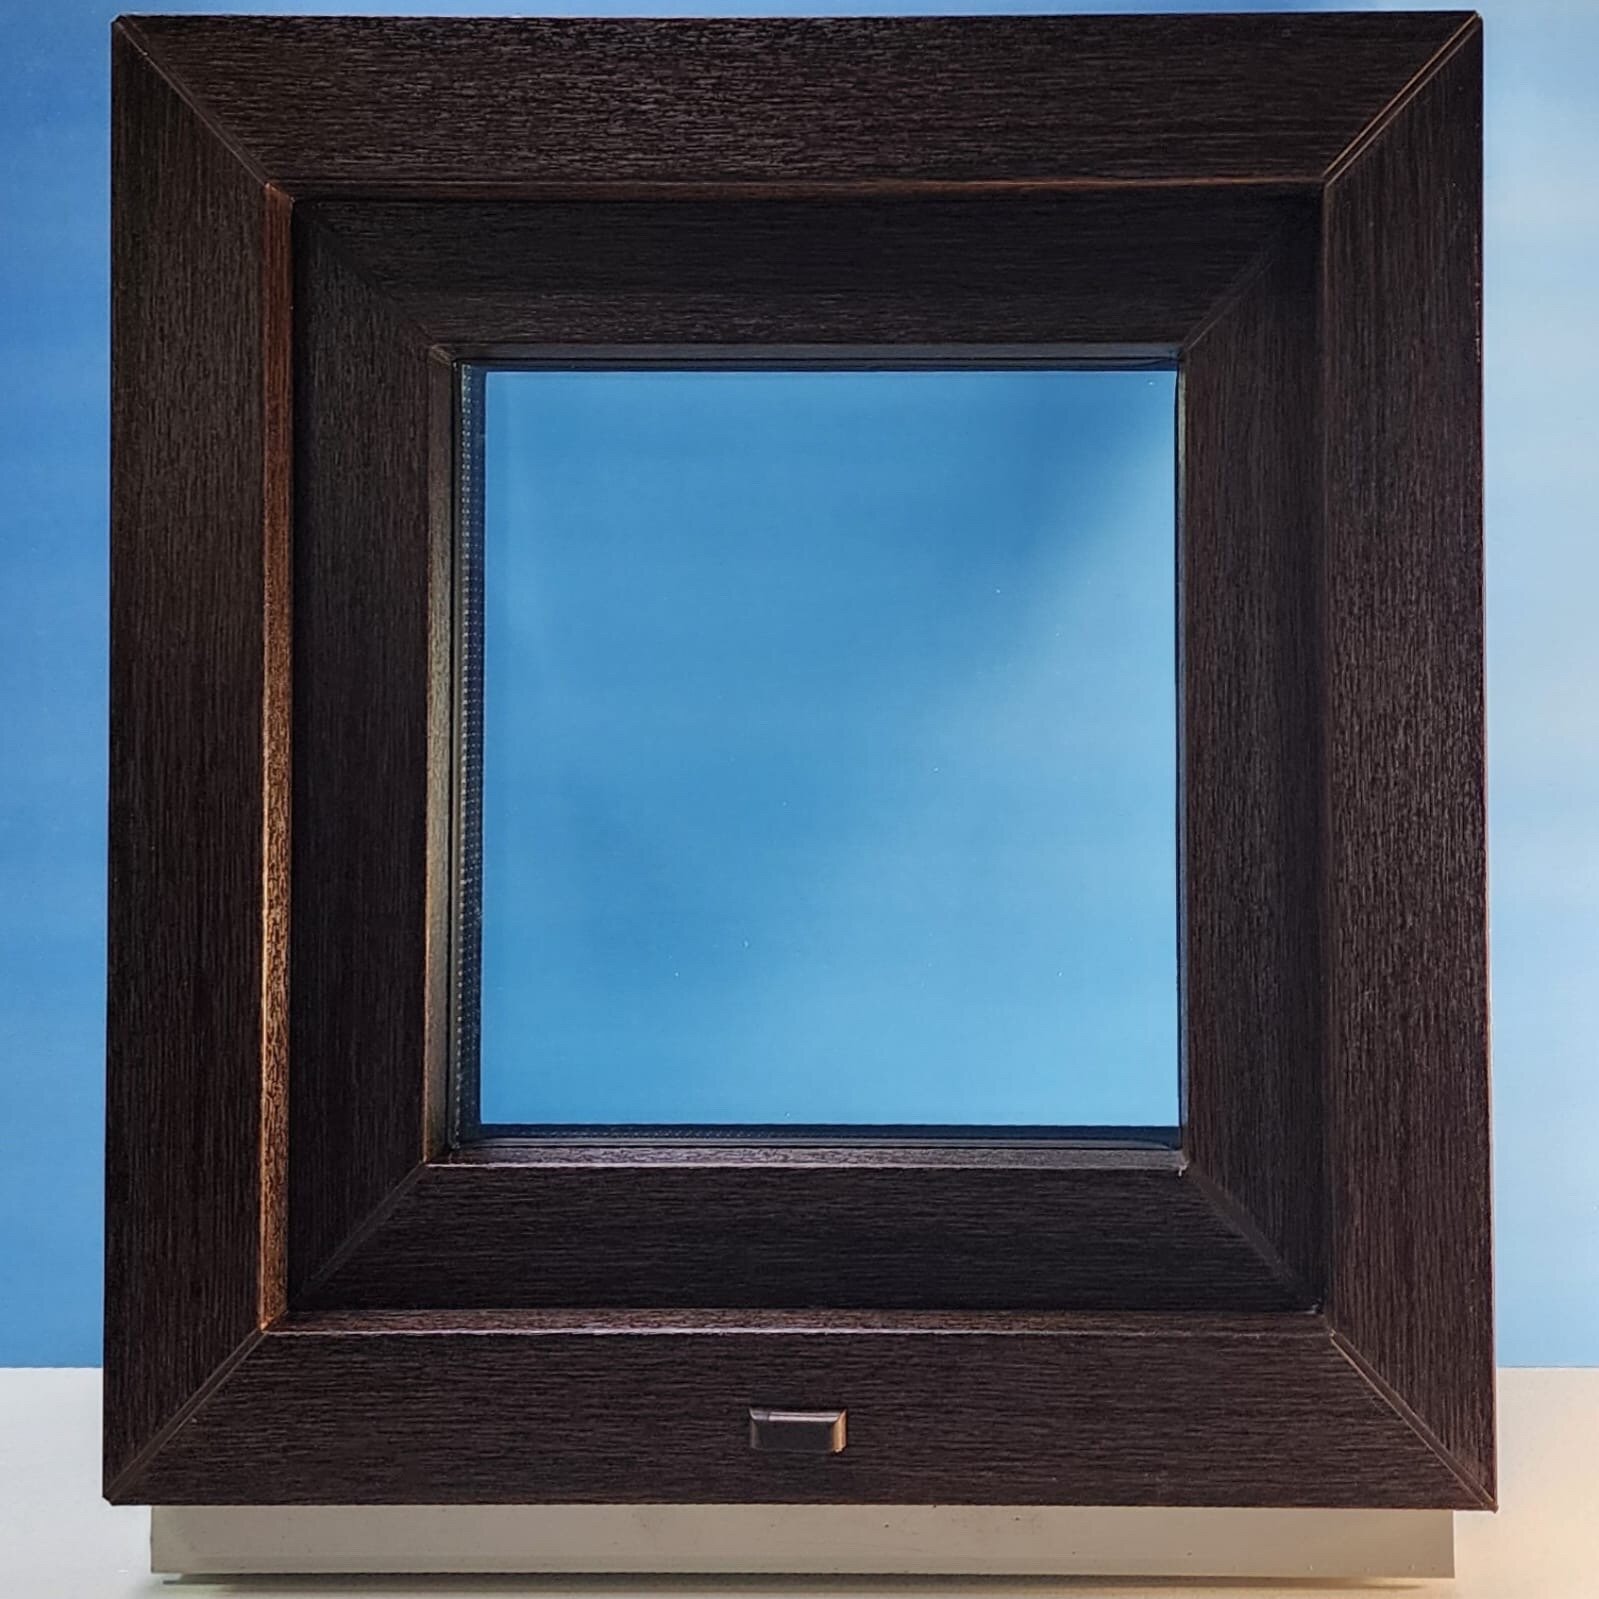 Окна пластиковые (ПВХ) размер 500*500мм, одностворчатое, поворотно-откидное, стеклопакет двухкамерный (4-10-4-10-4) цвет <<Тёмный дуб>>, коричневый.